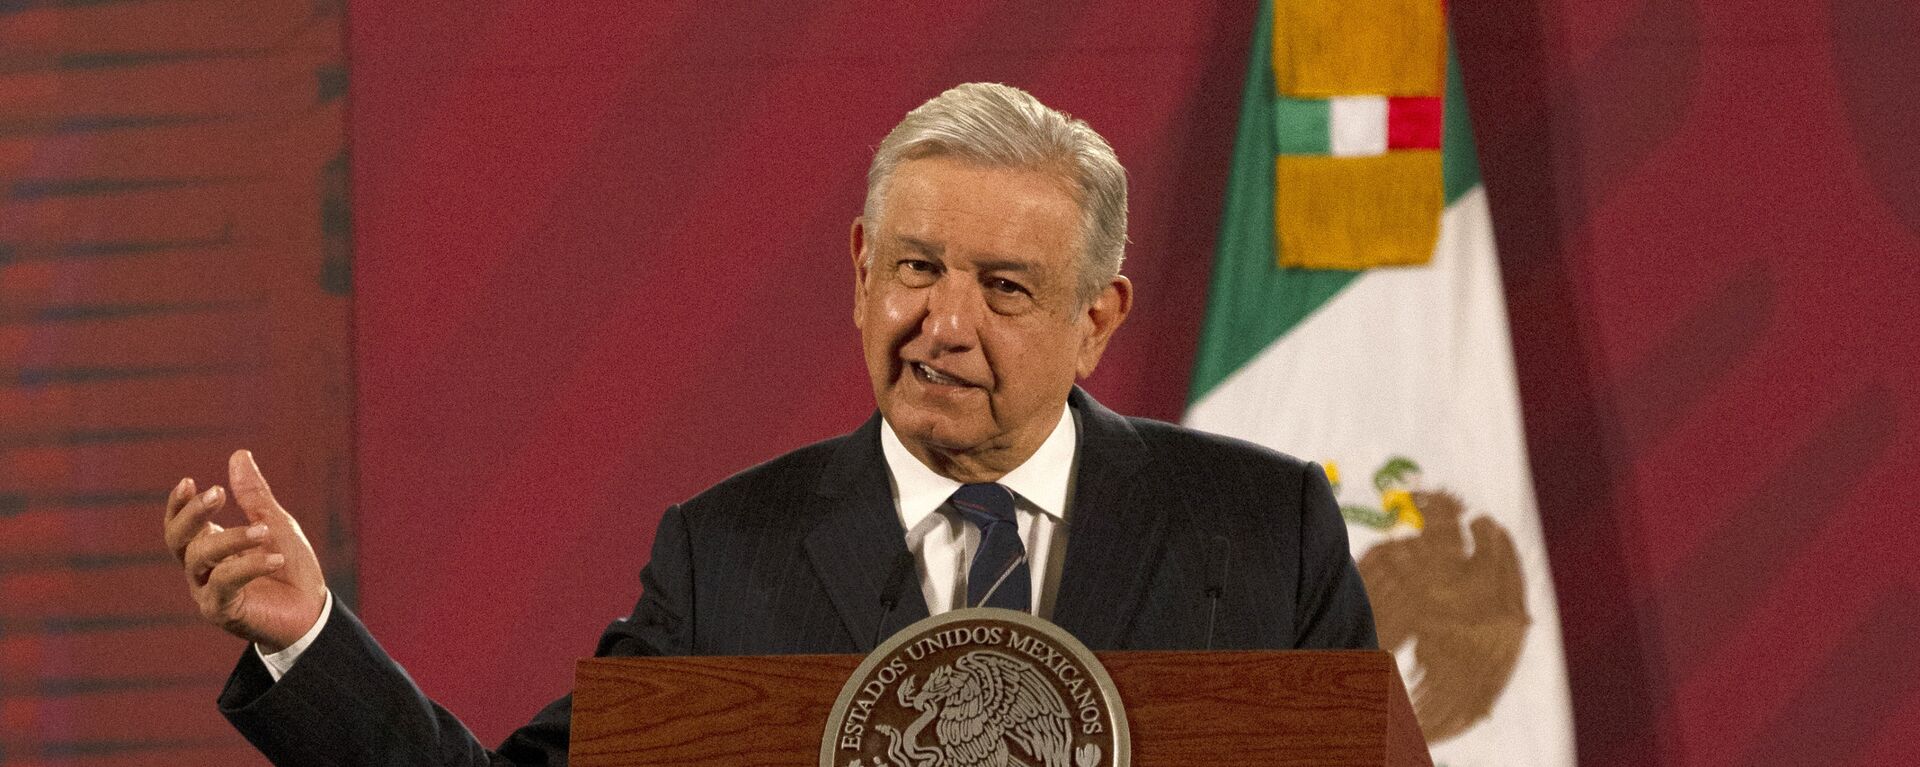 Andrés Manuel López Obrador, presidente de México - Sputnik Mundo, 1920, 20.08.2021